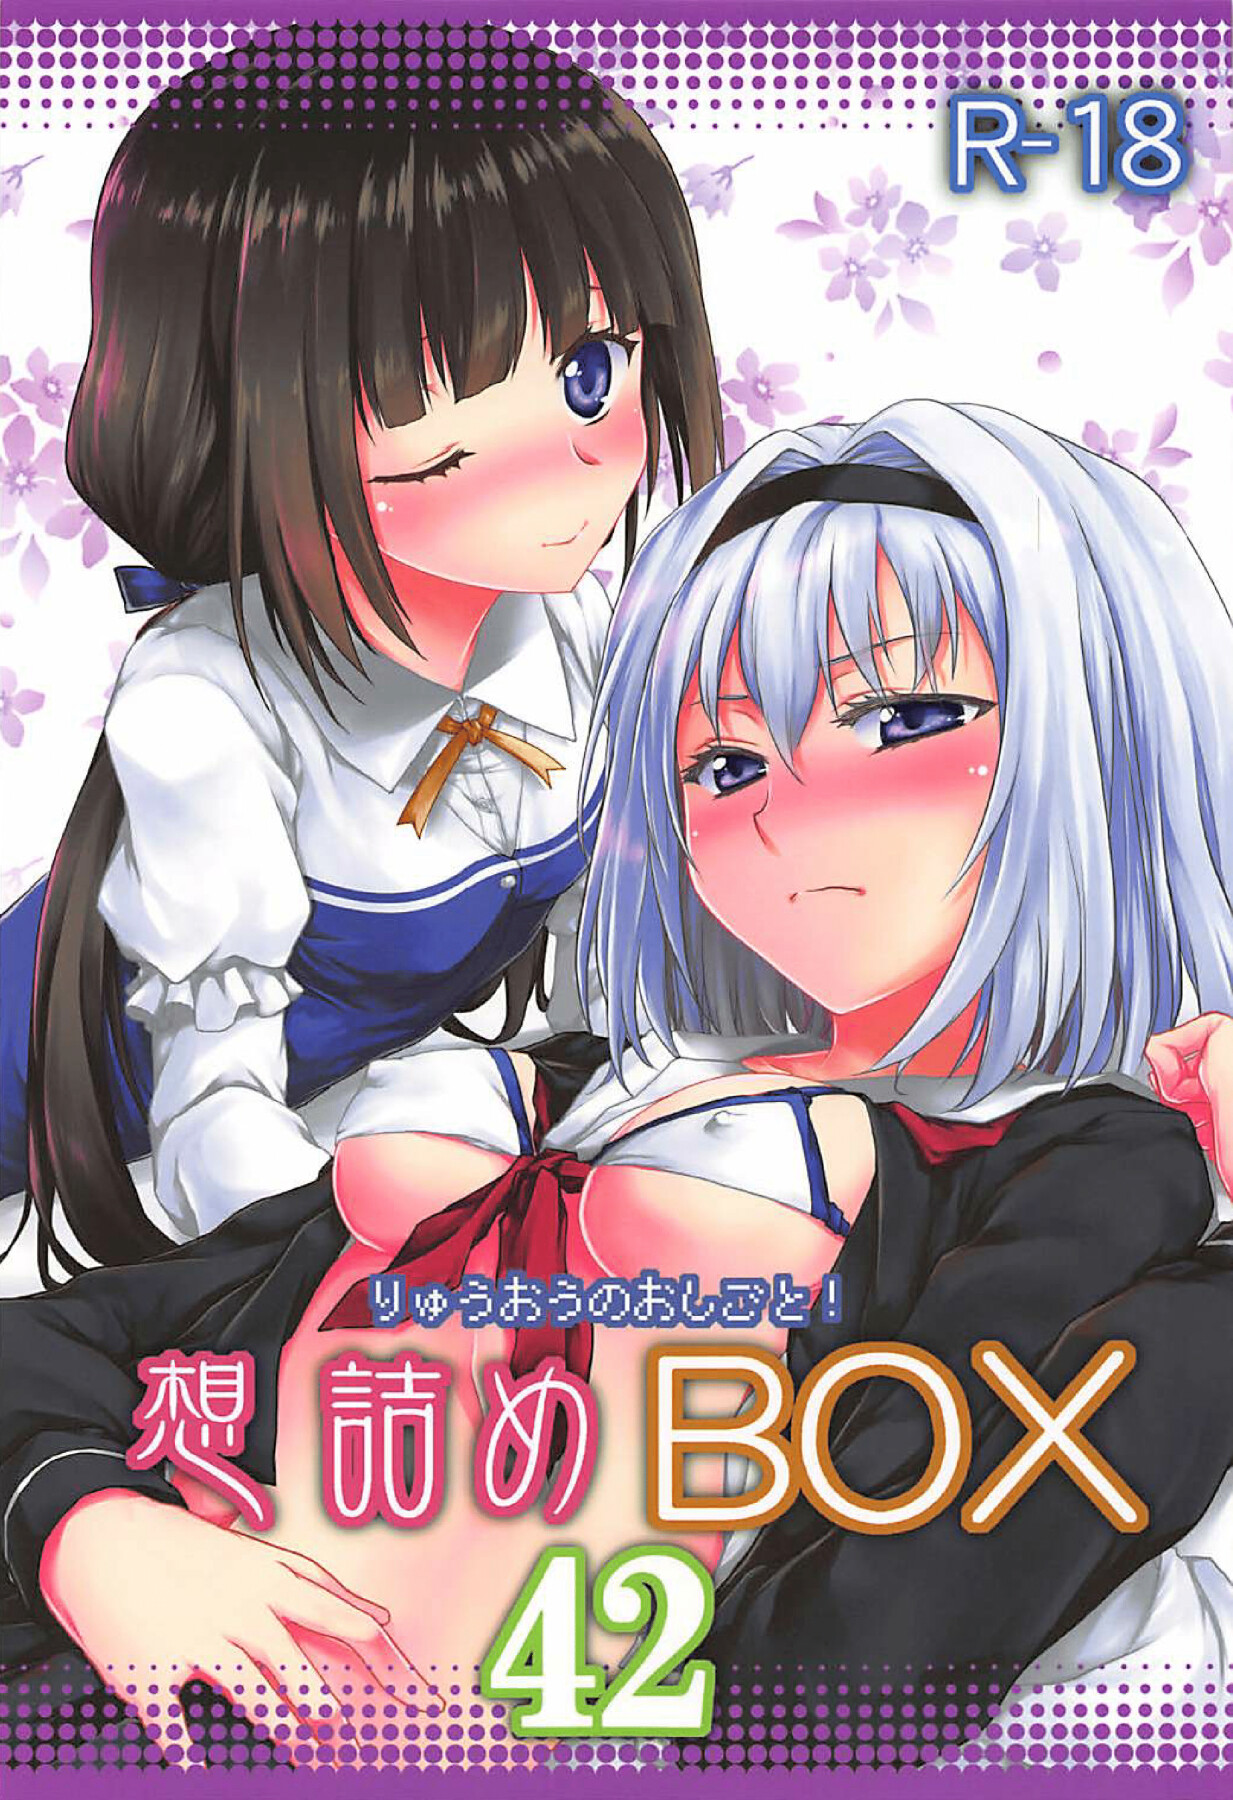 Hentai Manga Comic-Omodume BOX 42-Read-1